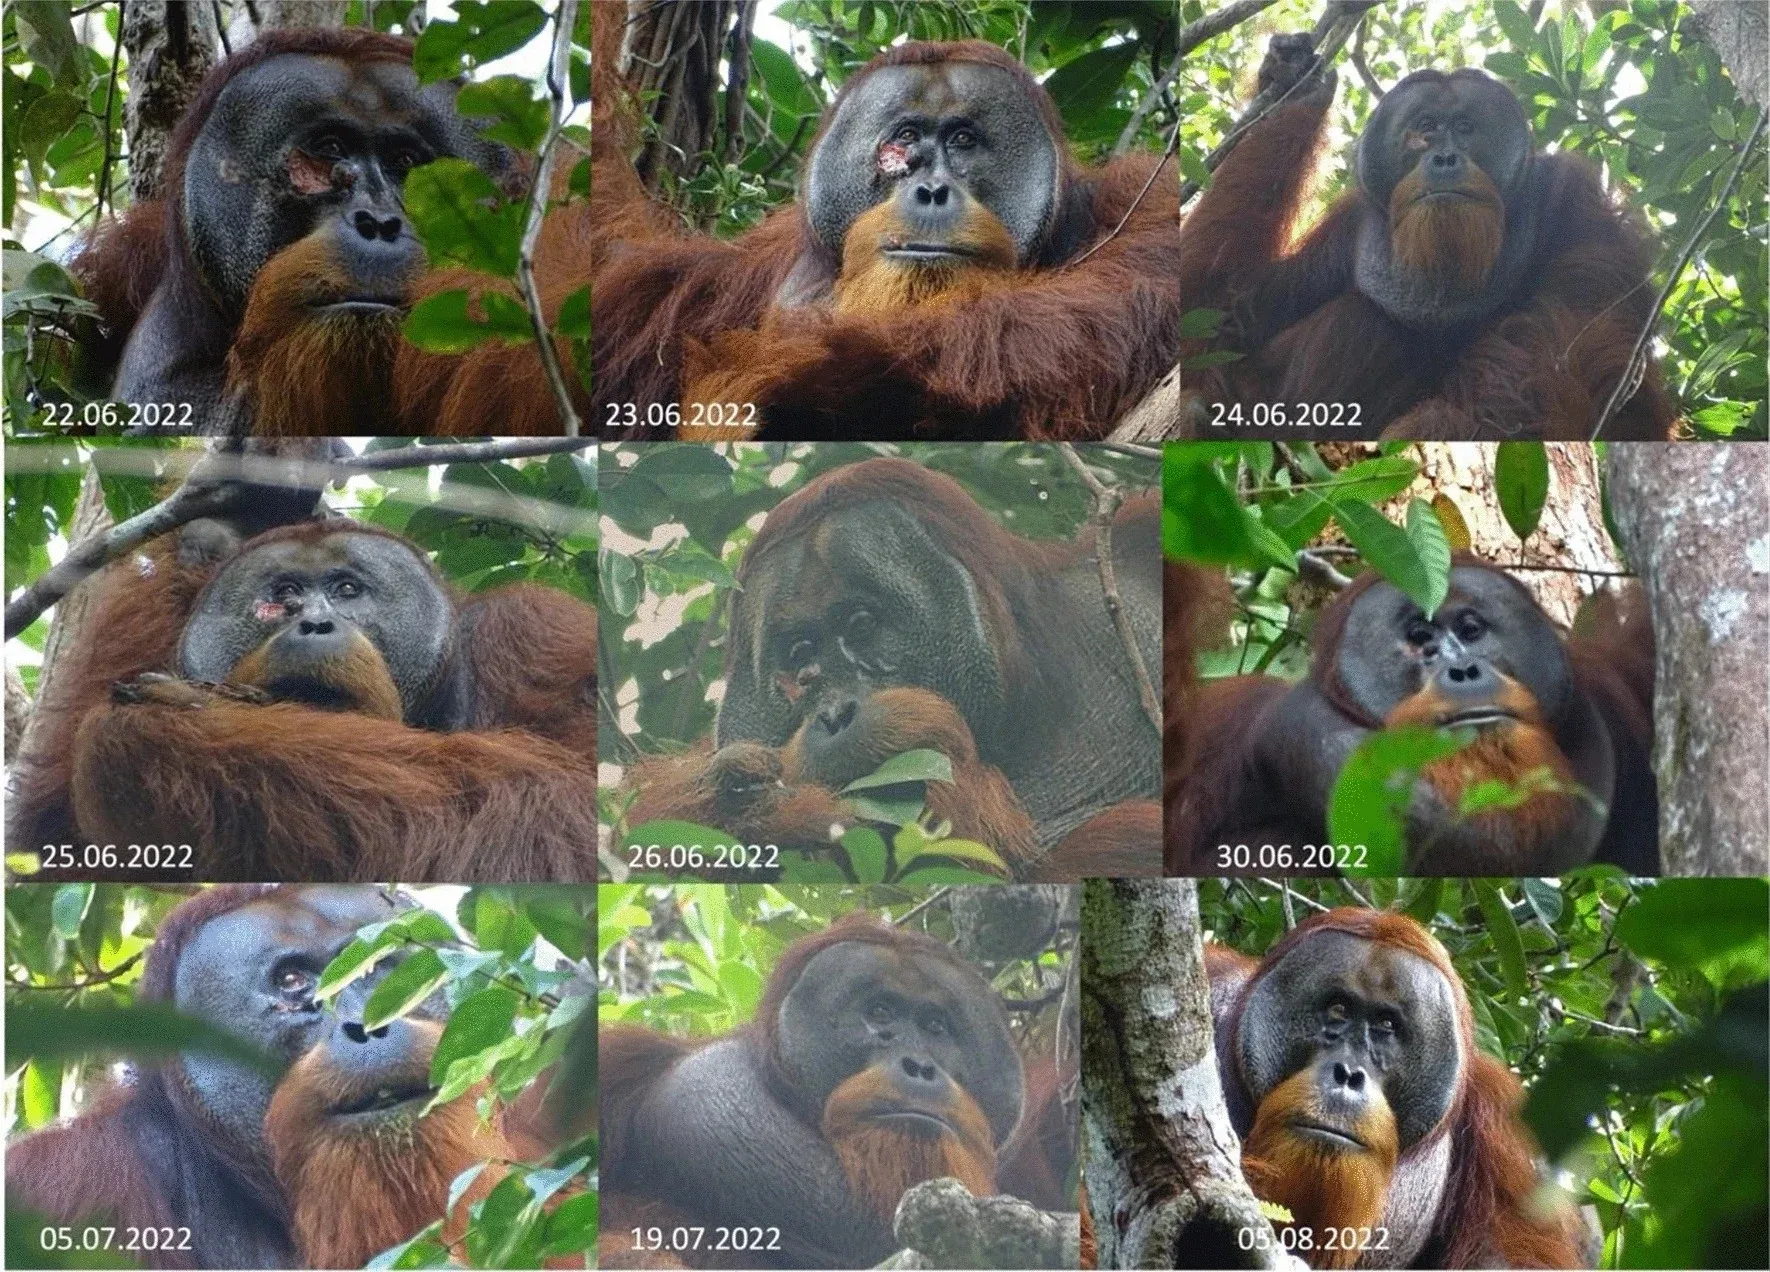 Снимки орангутанга Ракуса до, во время и после успешного лечения с использованием растения